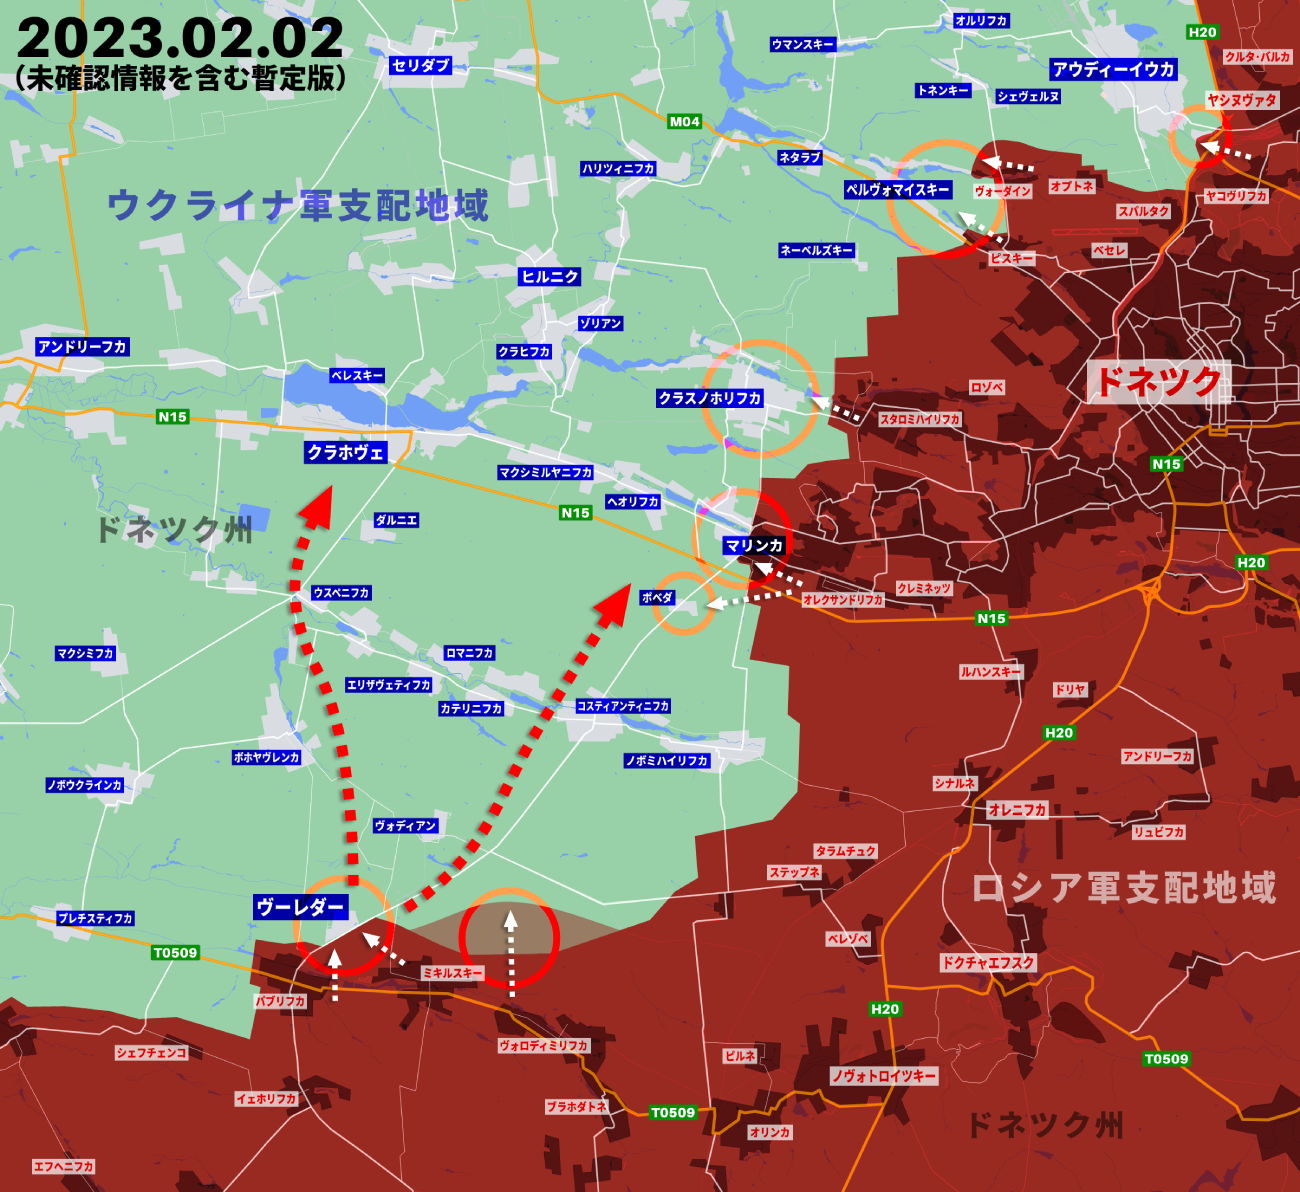 ウクライナ侵攻343日目の戦況、バフムート以外でもロシア軍が本格攻勢に出る兆し